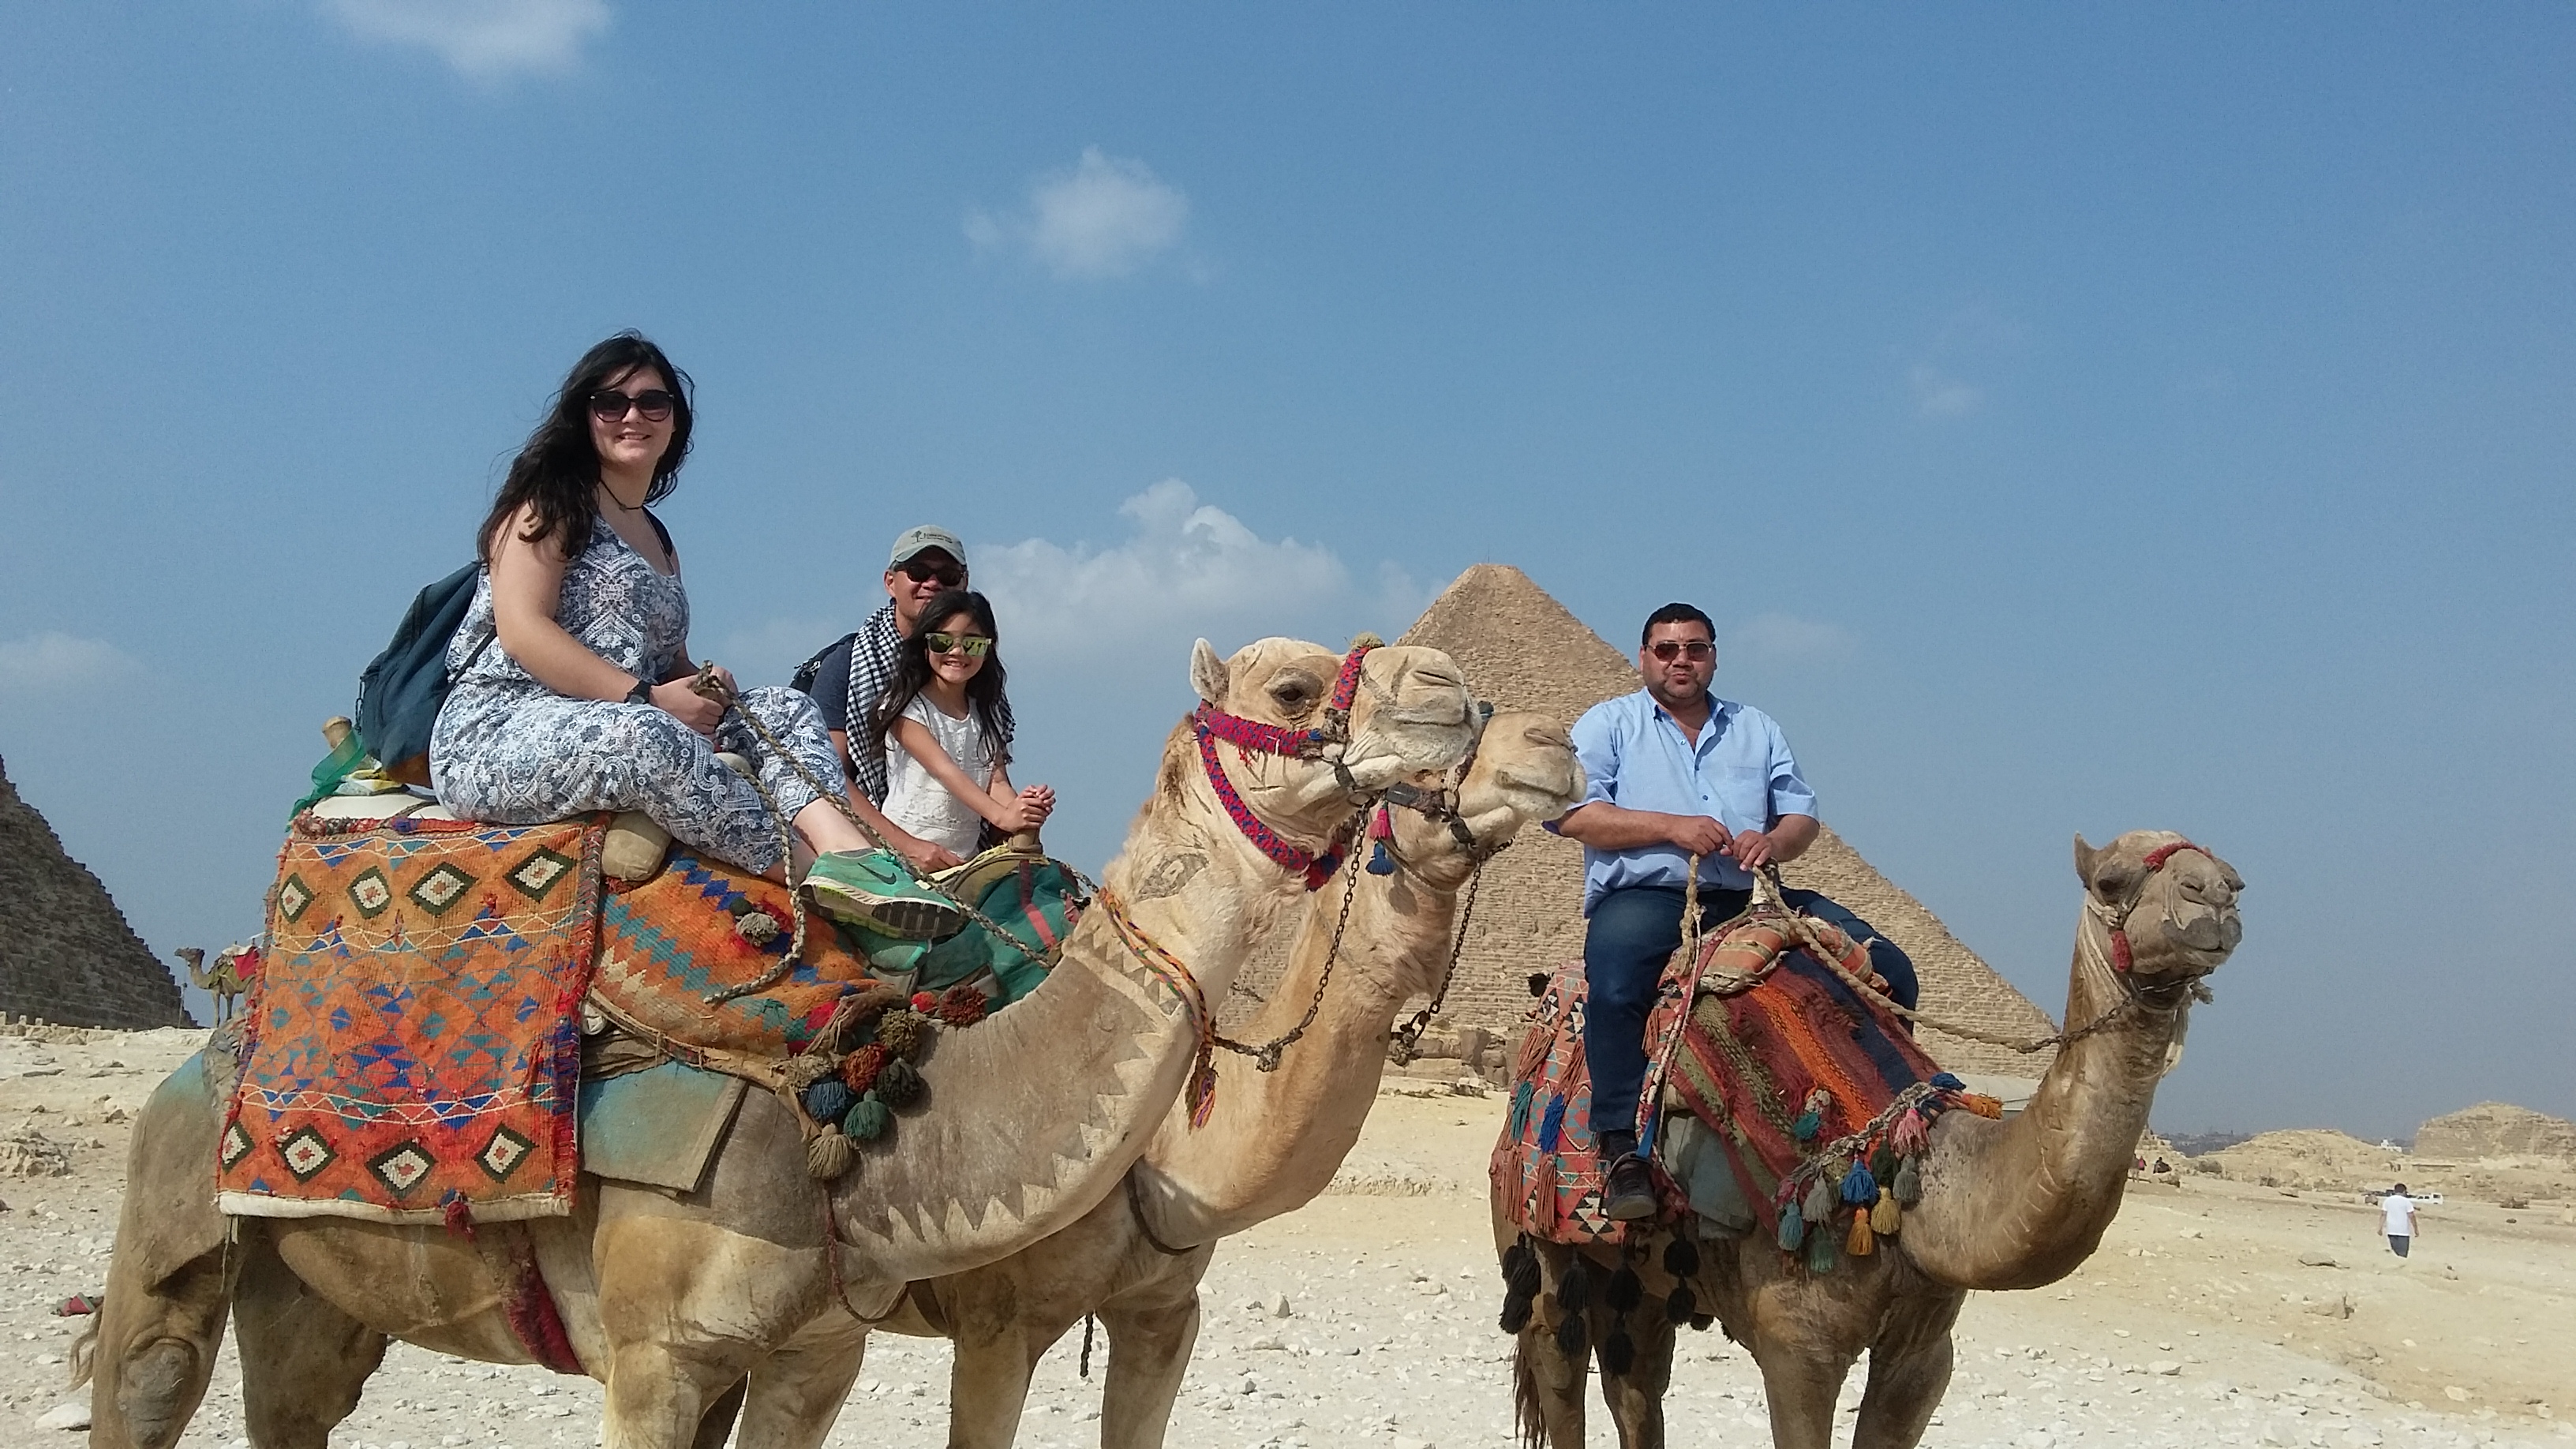 Day tour - Sakkarah, Giza Pyramids, Sphinx and Cairo City Tour